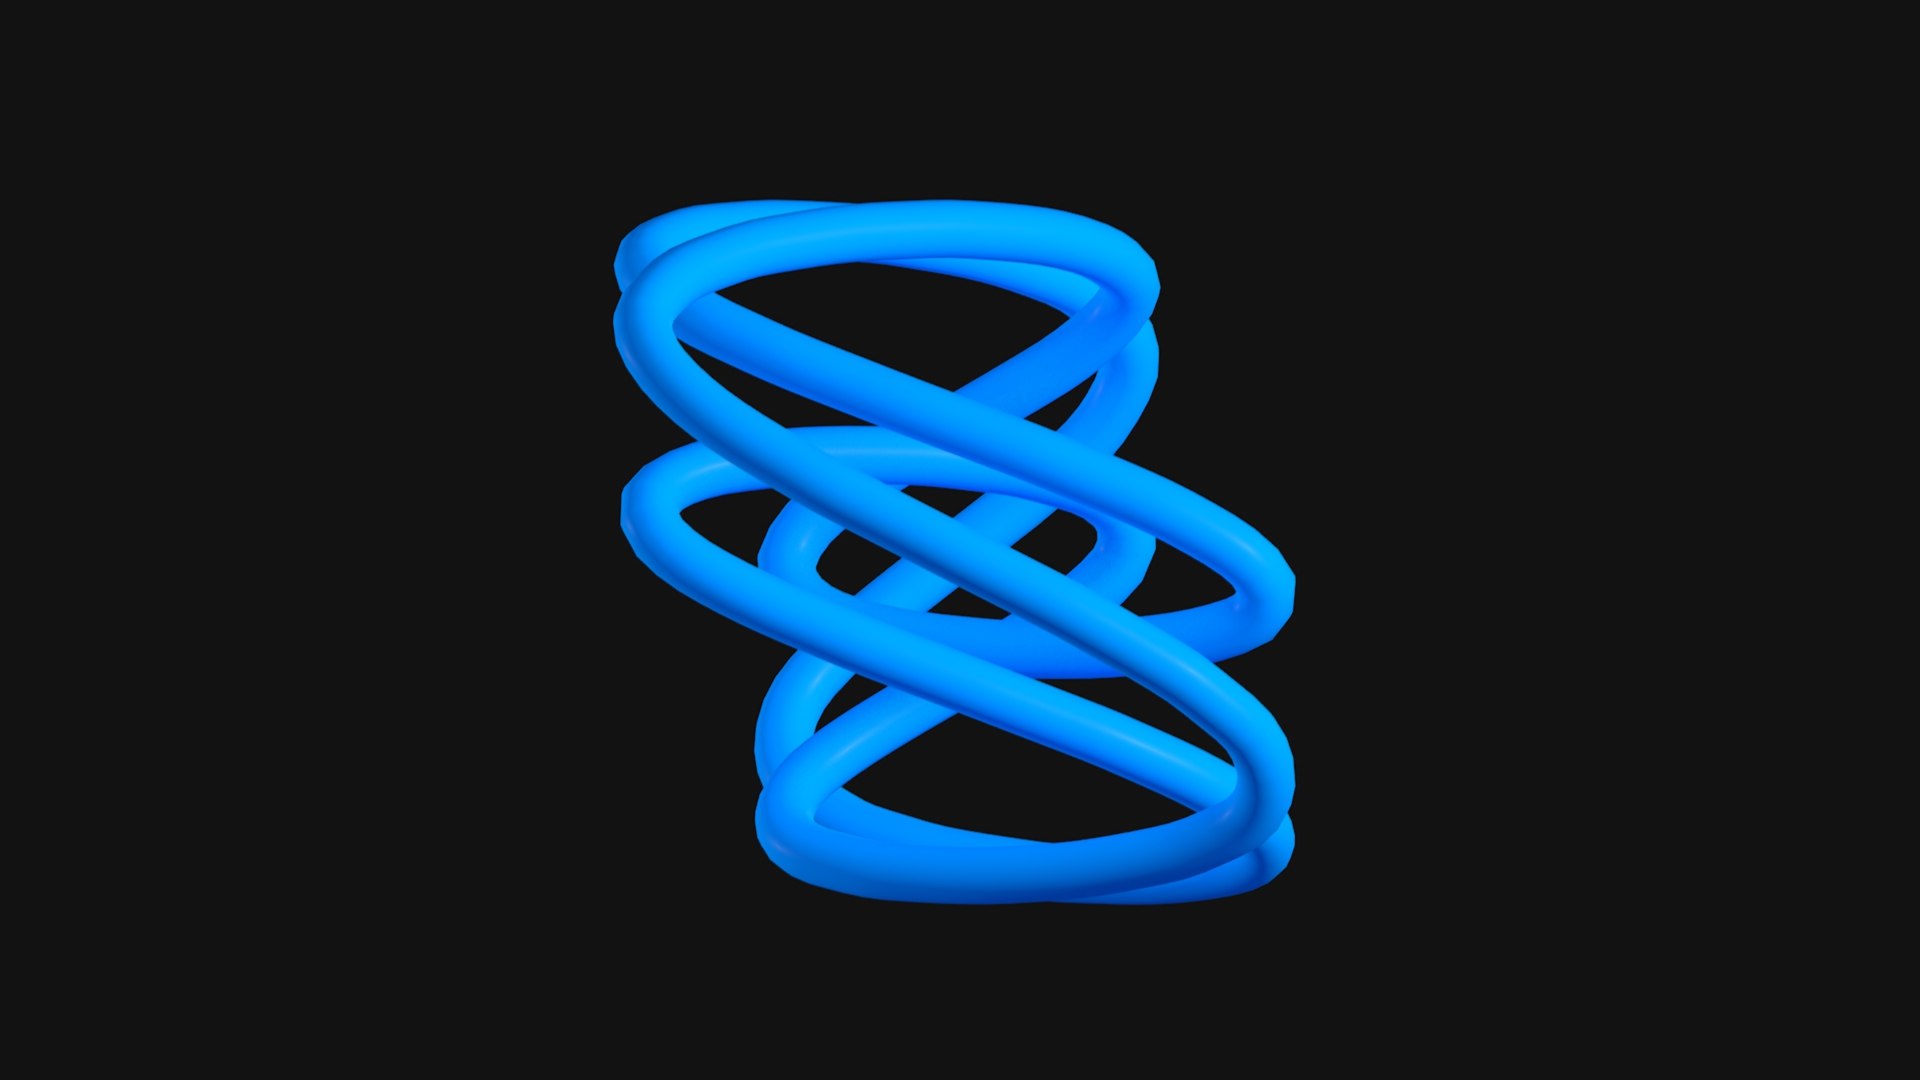 Figure Eight Loop Knot C4D 3D model - TurboSquid 2069737